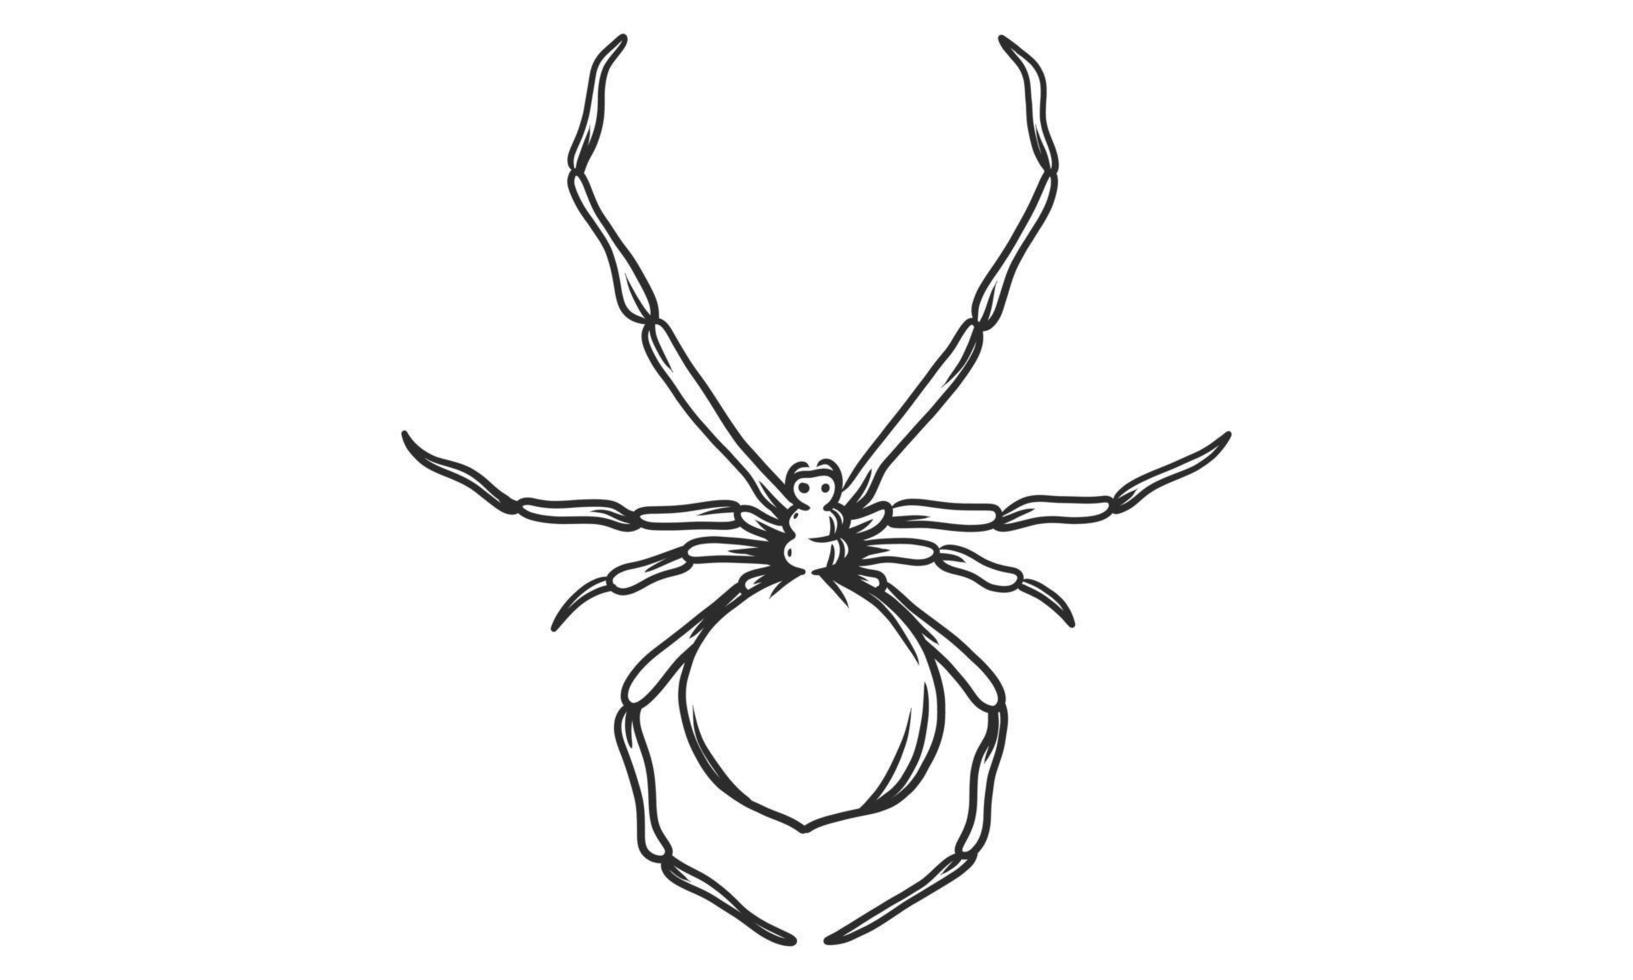 Vektor-Lineart-Illustration der schwarzen Spinne auf weißem Hintergrund, handgezeichnete Spinneninsektenskizze vektor